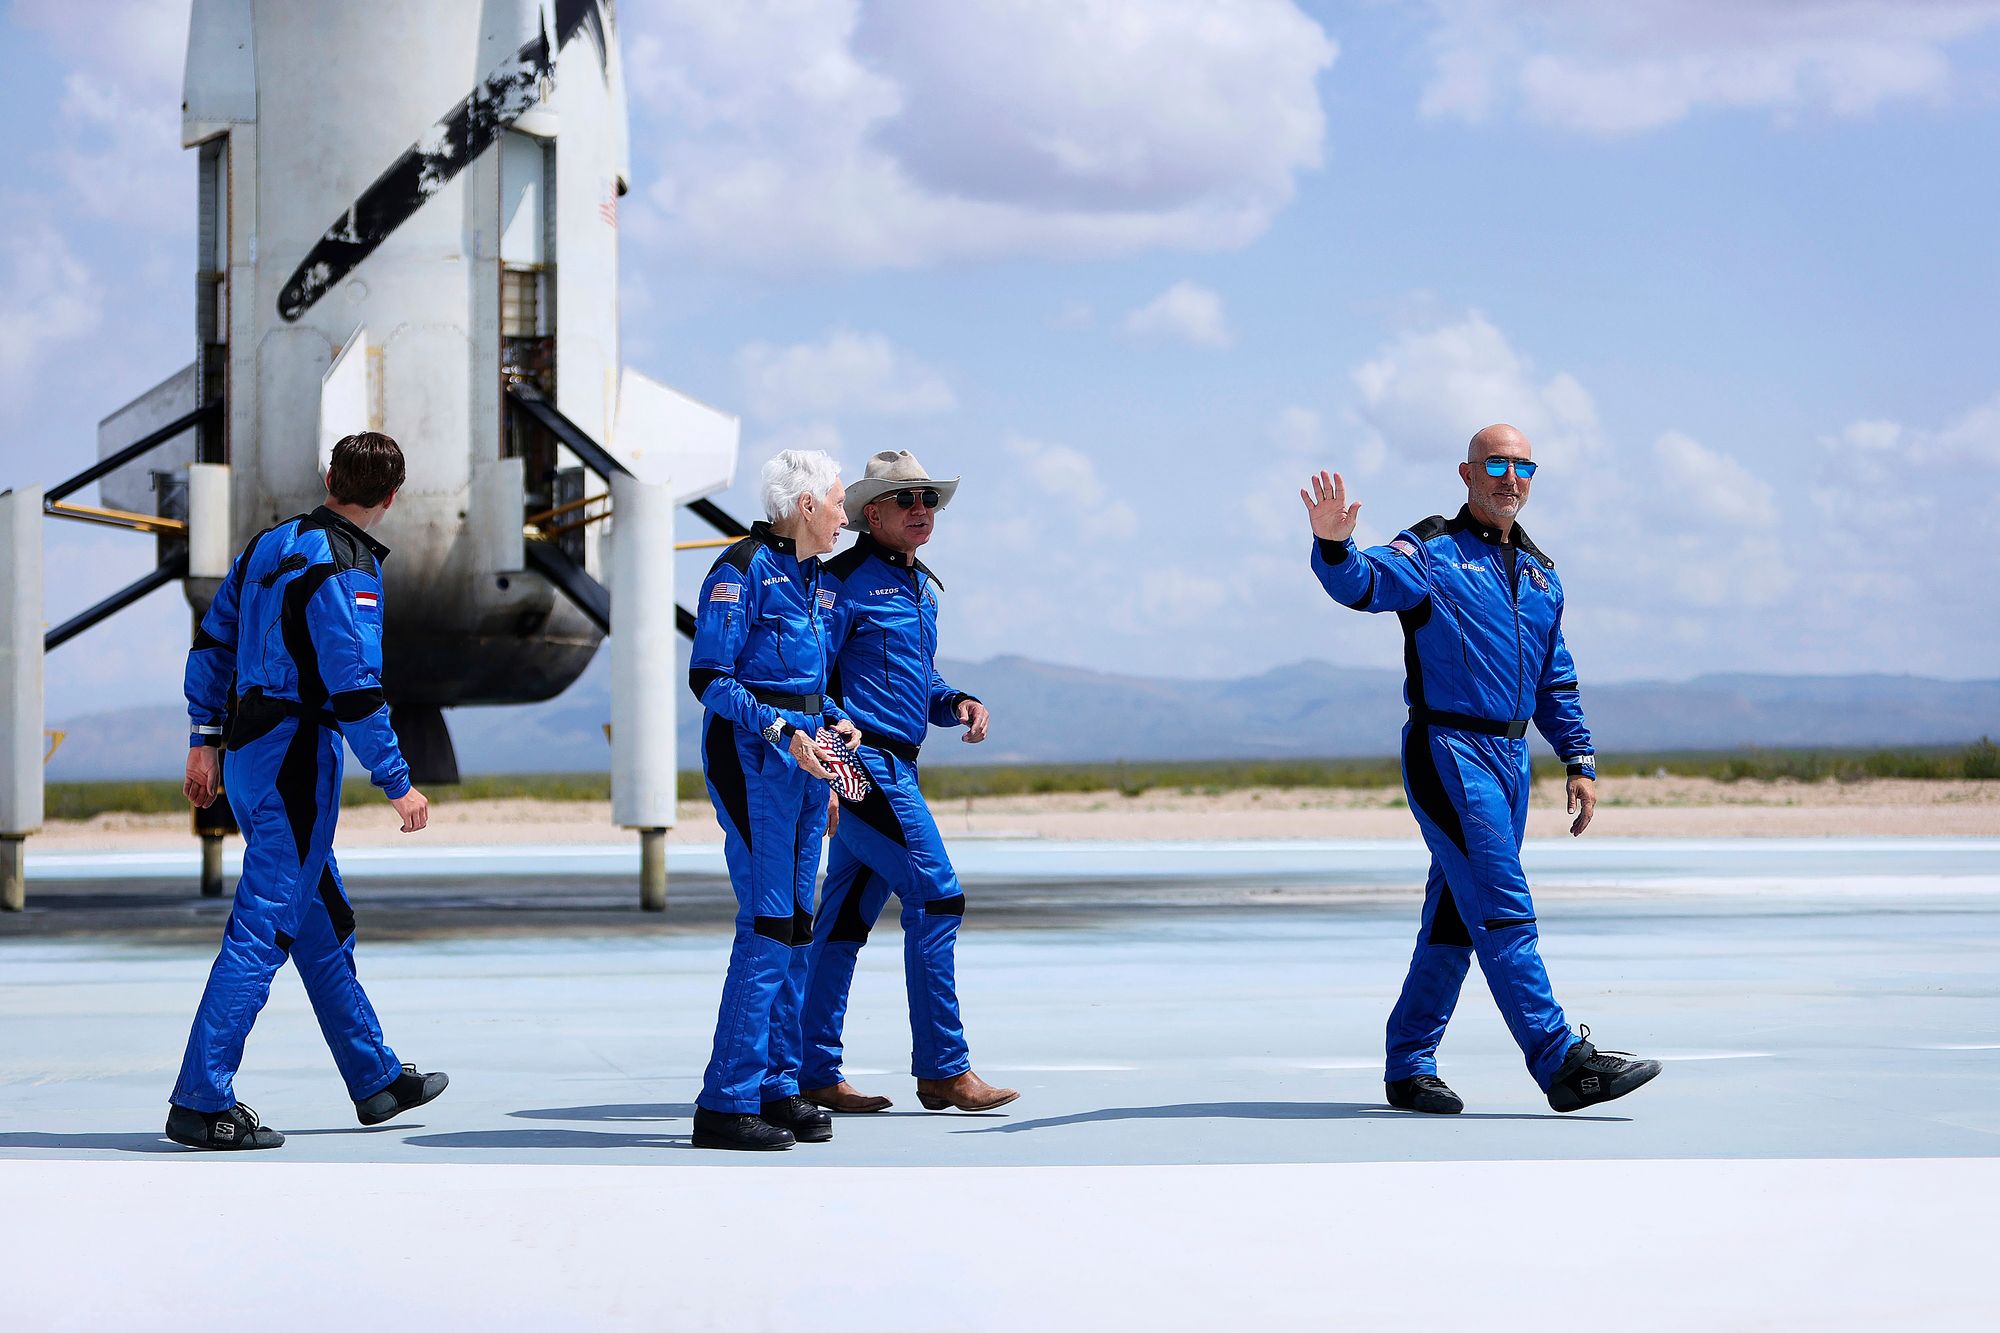 Miljardööri Jeff Bezos kävi avaruudessa ­heinäkuussa 2021. Lento kesti 10 minuuttia ja 20 sekuntia ja vei hänet noin 107 kilometrin korkeuteen. ­Bezosin omistaman Blue Origin -yhtiön rake­tin kyydissä oli myös kolme muuta ­matkustajaa. © Getty Images